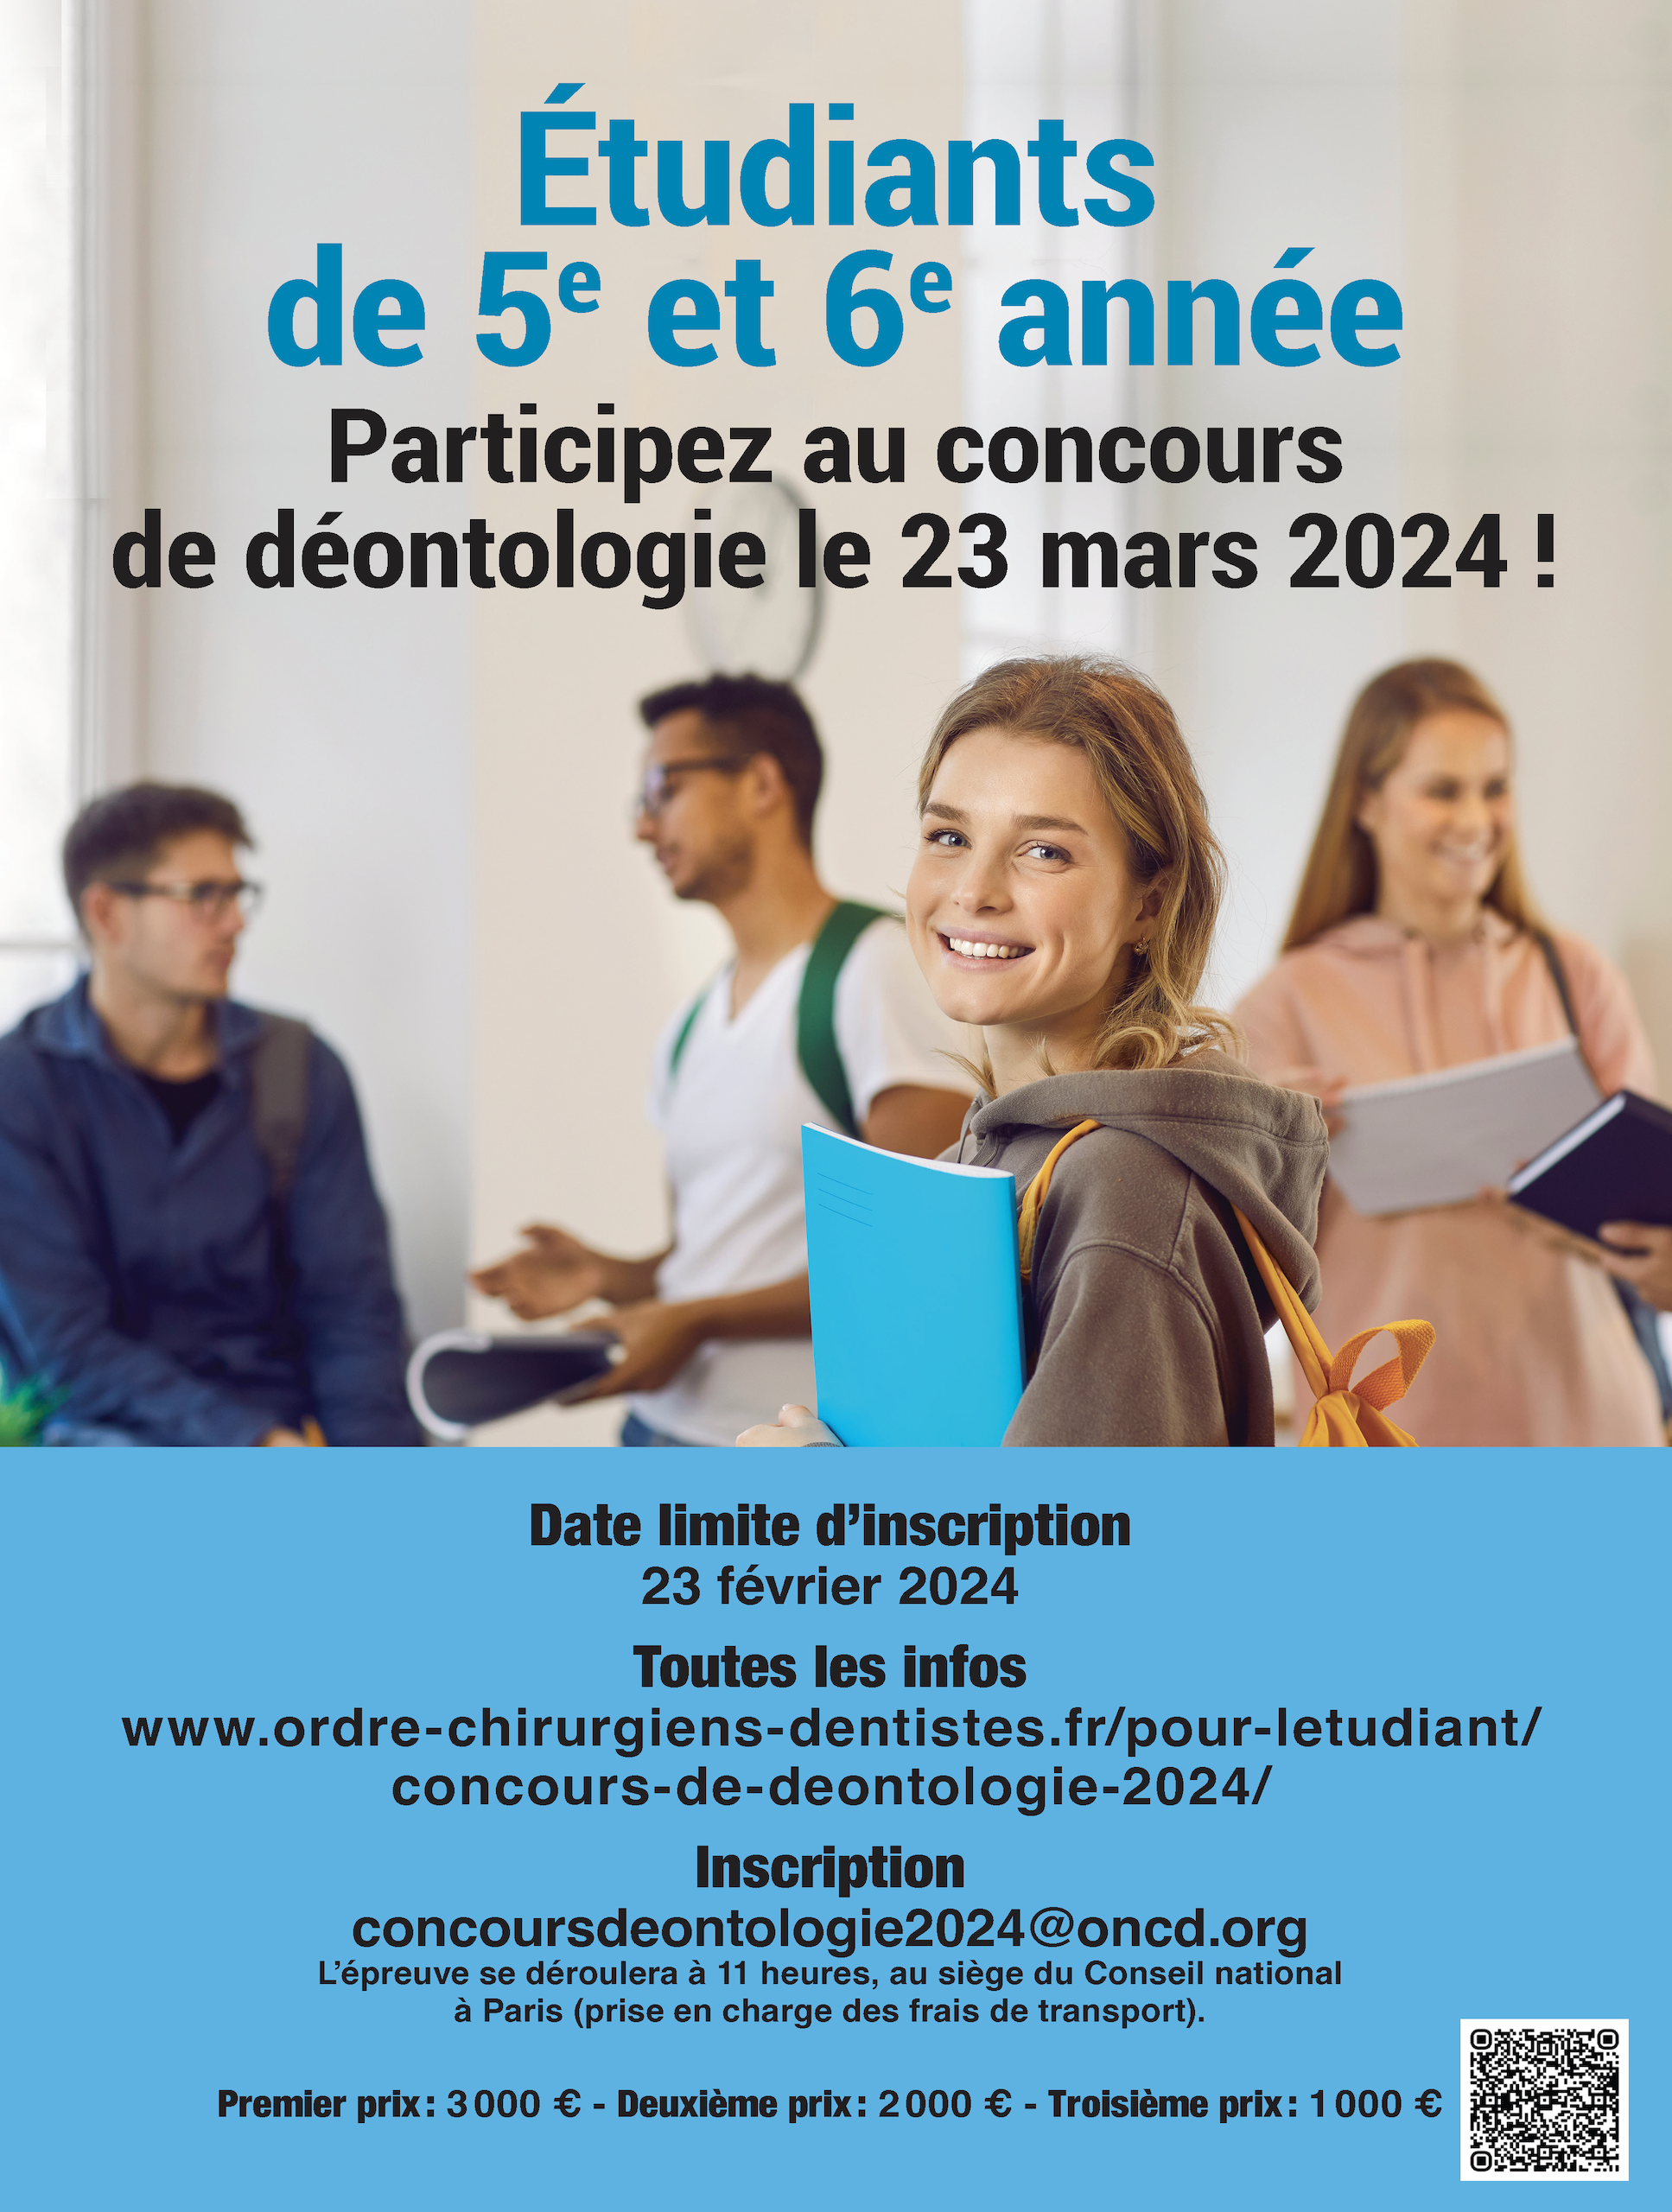 DT News - France - Protection du patient en odontologie – Le cadre à digue  de seconde génération